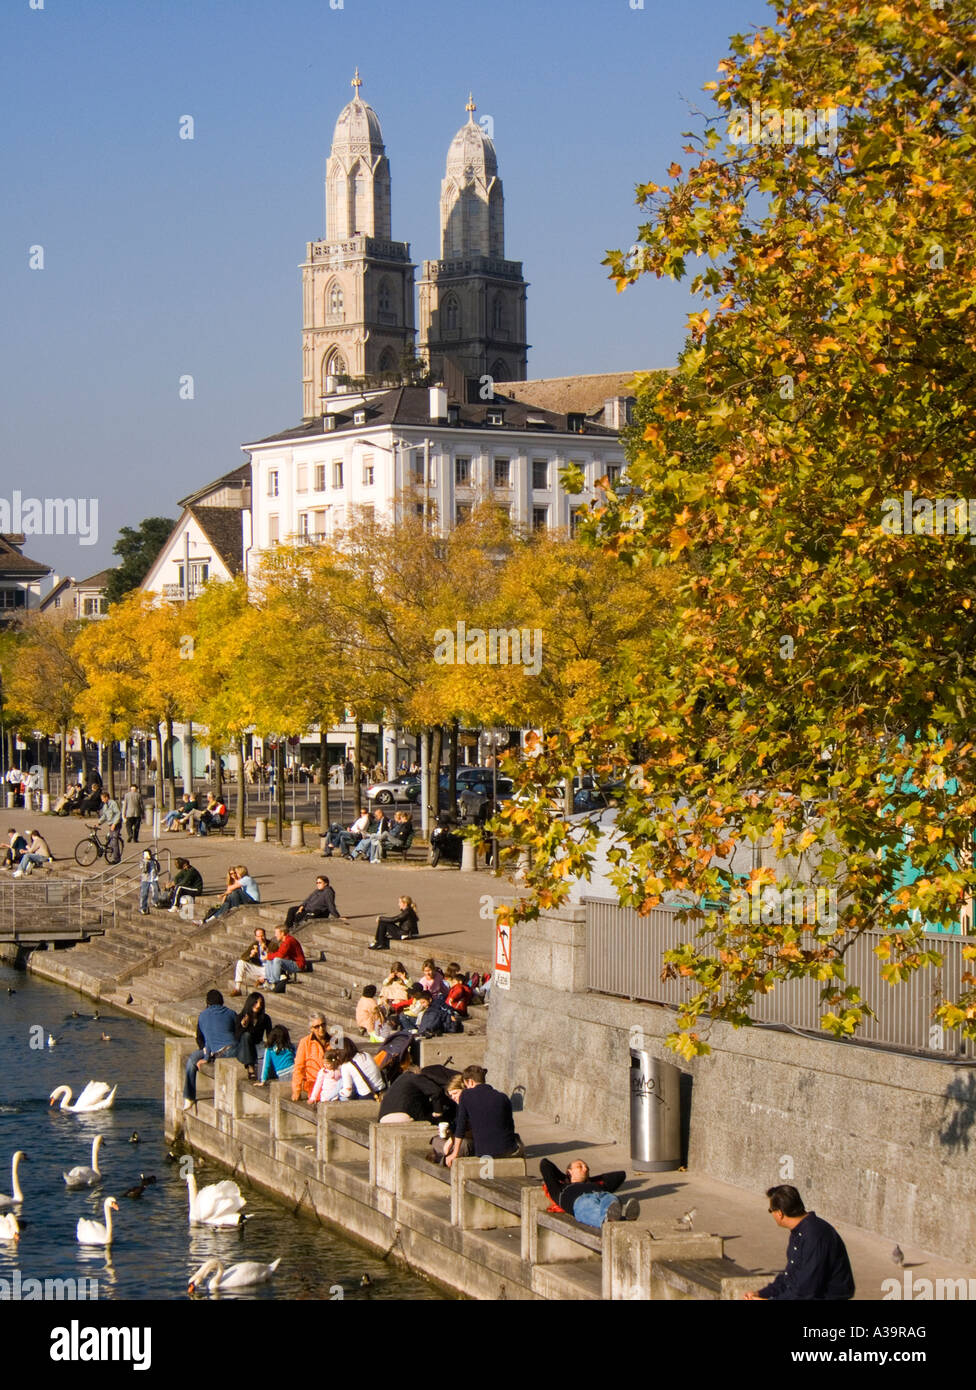 Switzerland Zurich Grossmunster Limmatquai in autumn promenade Stock Photo